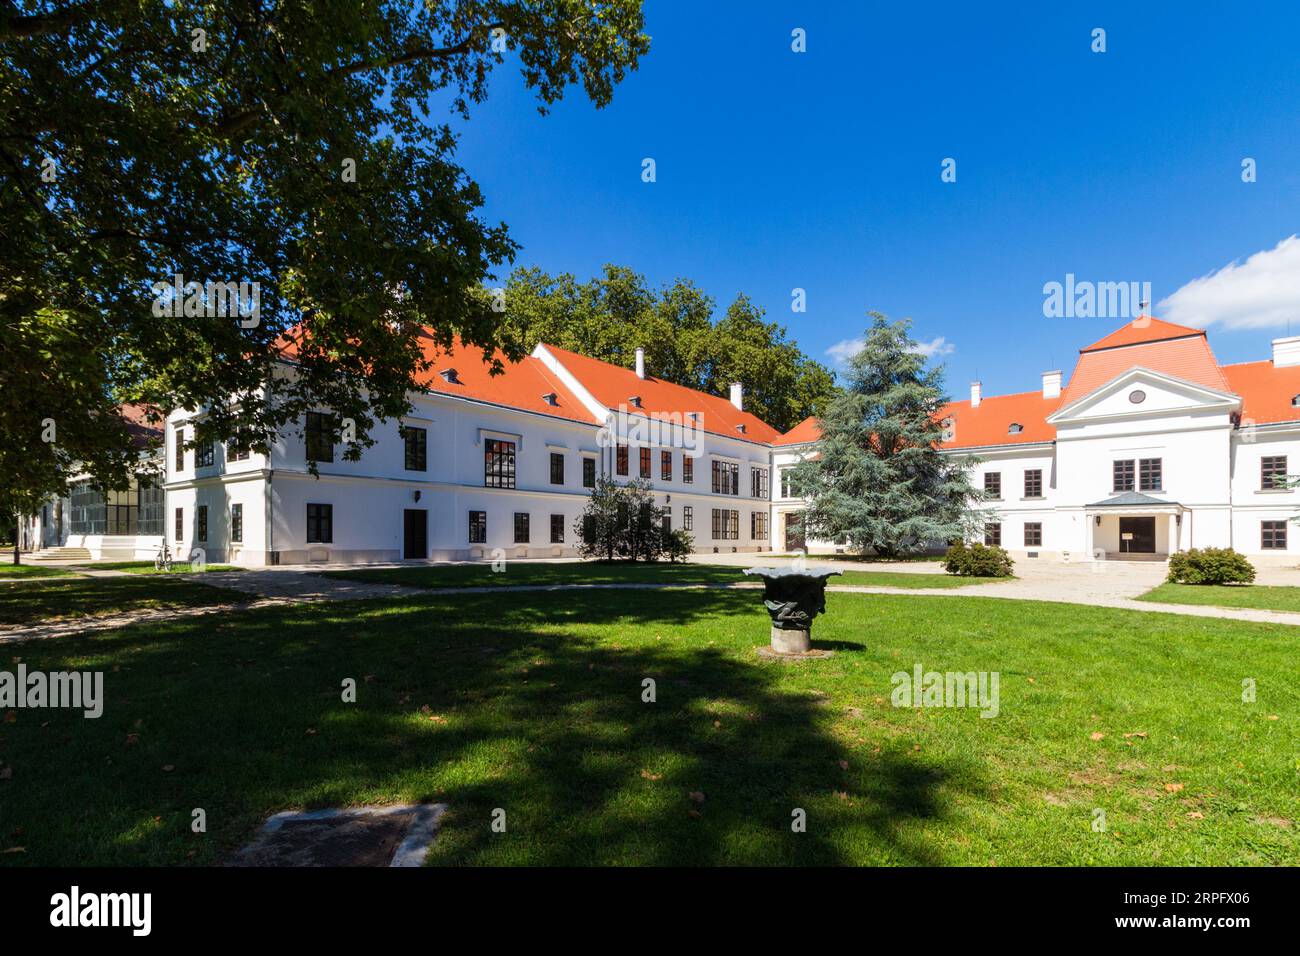 Façade sud du palais ou manoir Szechenyi, construit en 1750 dans le style baroque, Nagycenk, Hongrie Banque D'Images